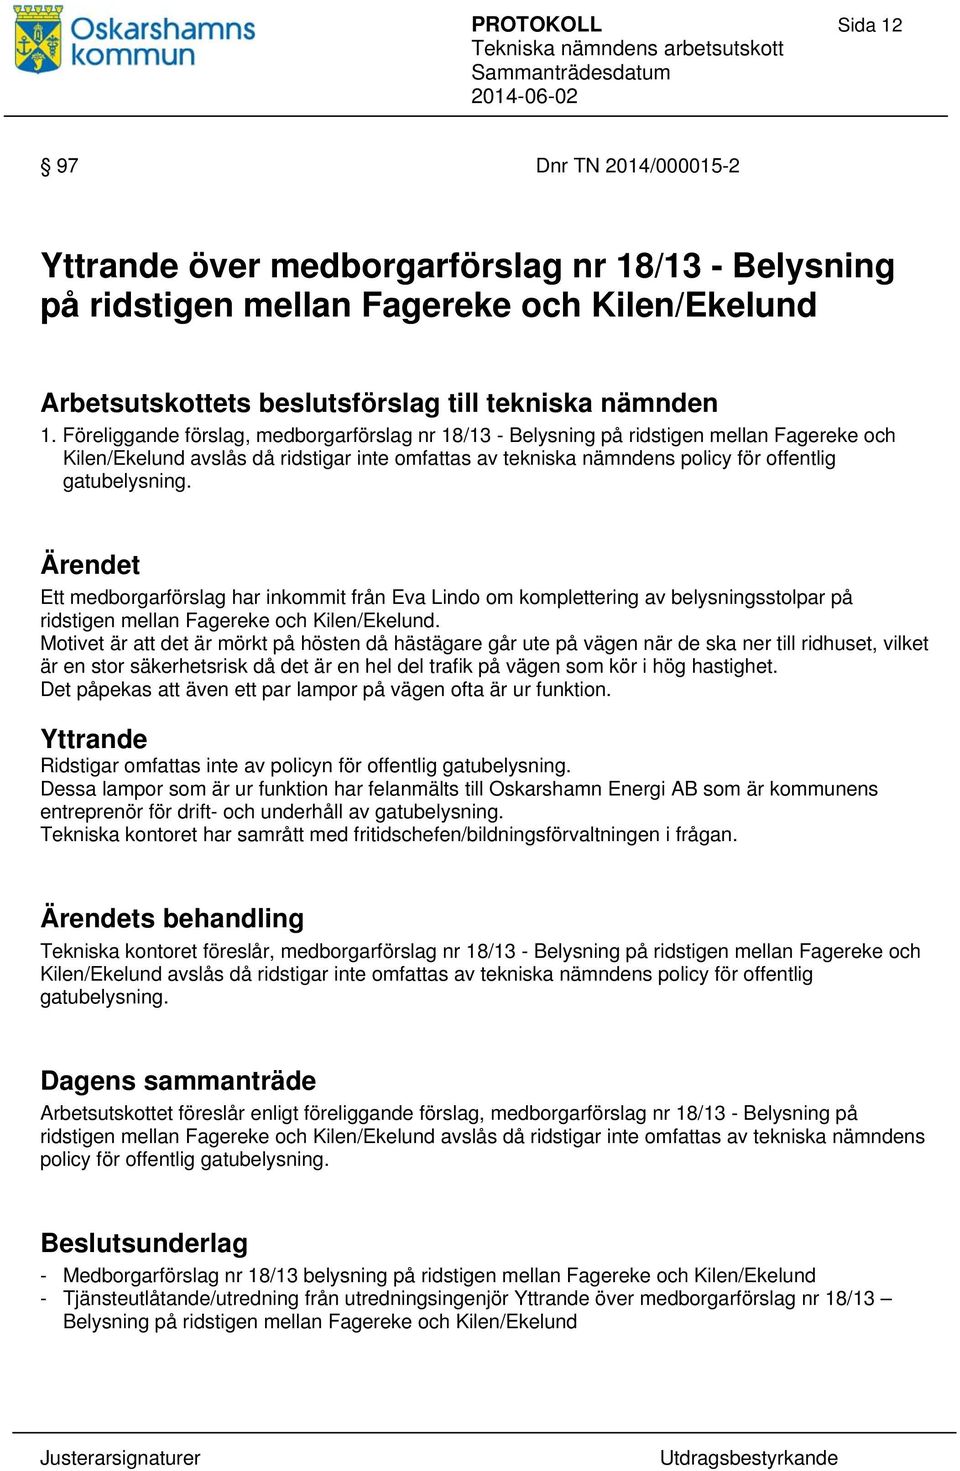 Ett medborgarförslag har inkommit från Eva Lindo om komplettering av belysningsstolpar på ridstigen mellan Fagereke och Kilen/Ekelund.